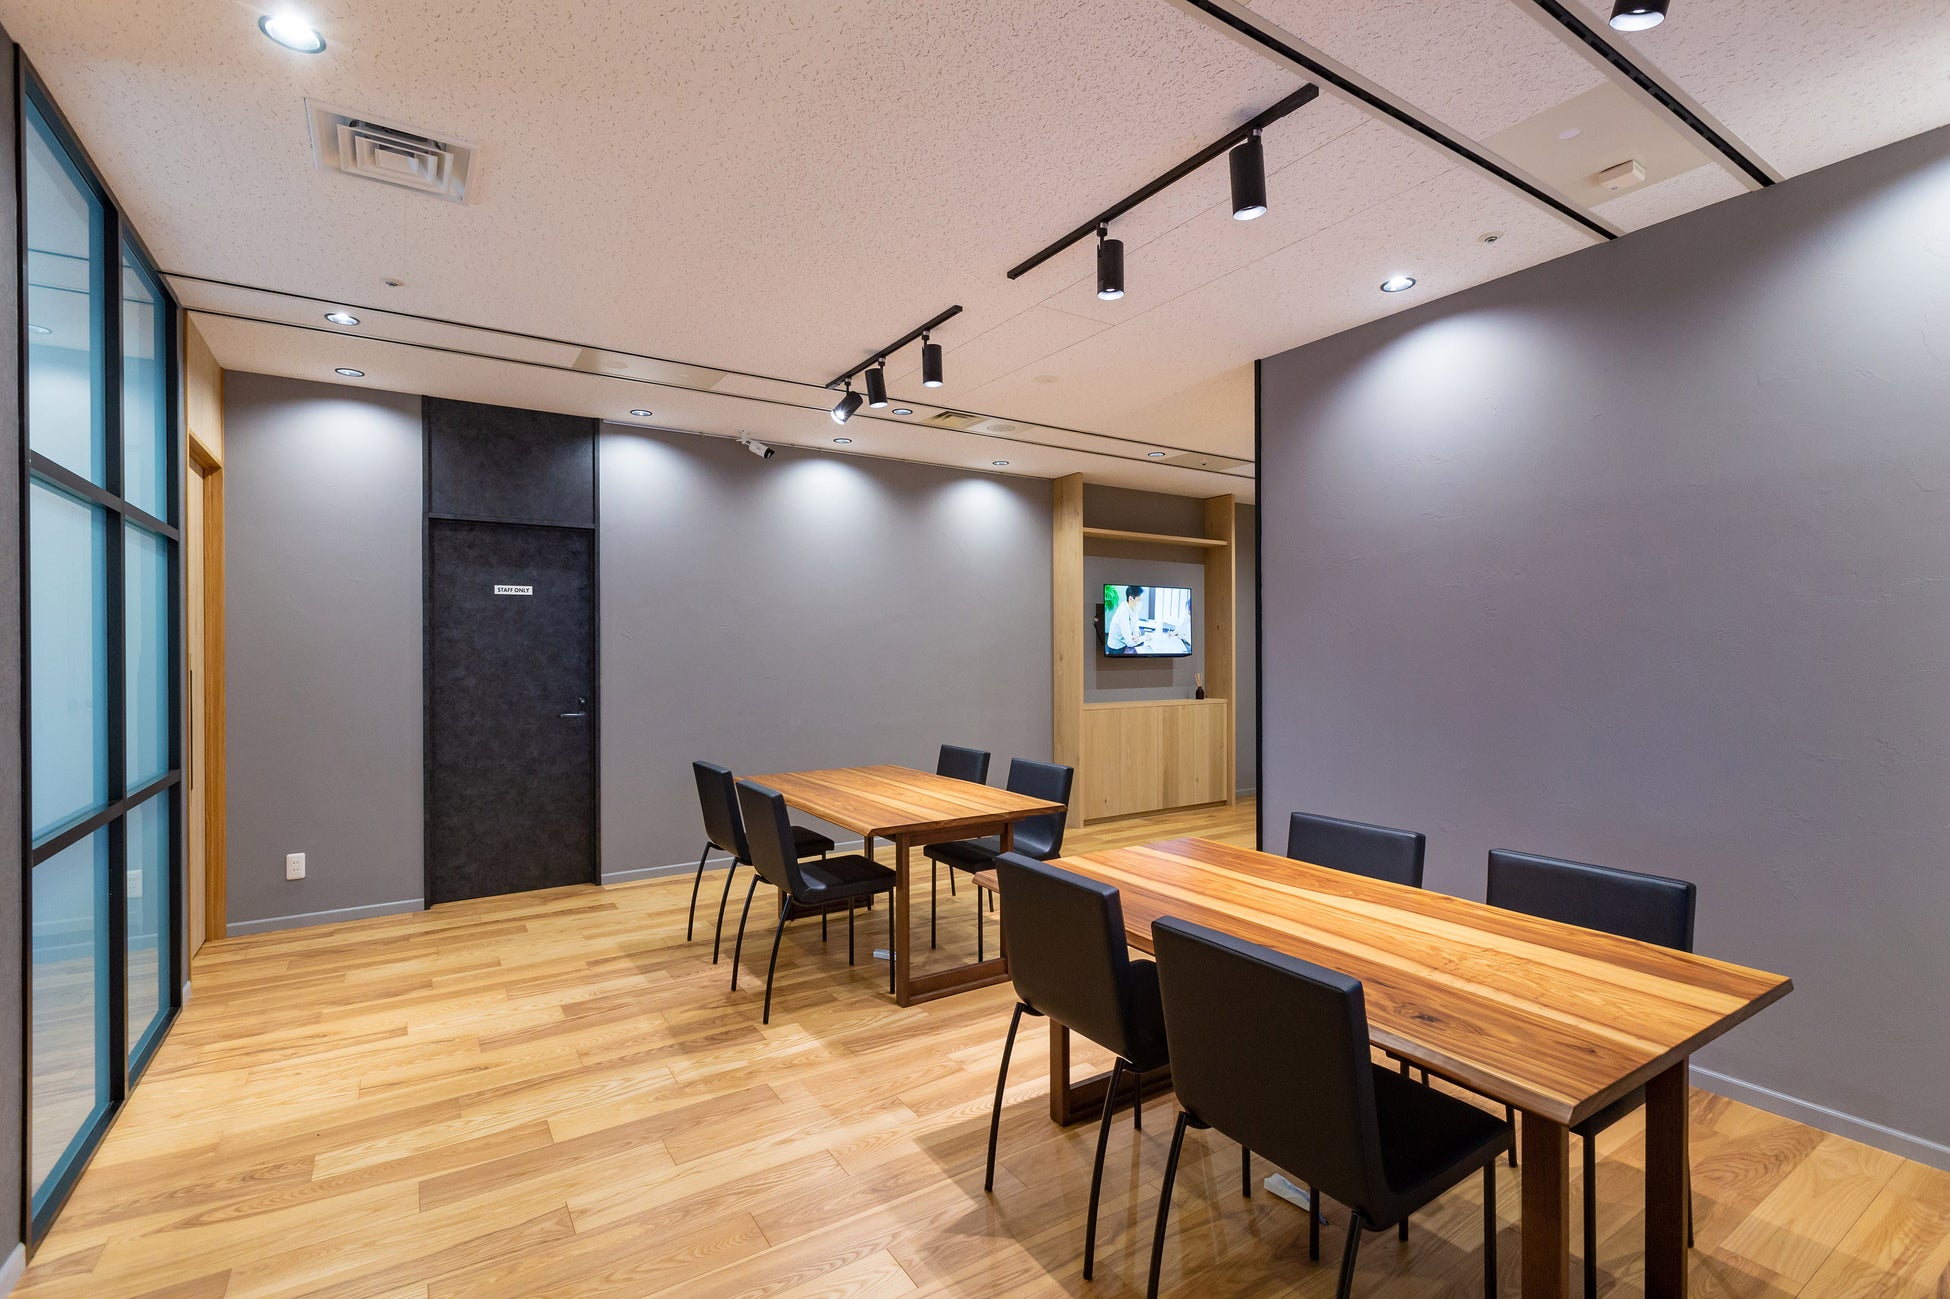 「ナイス住まいの情報館 横浜」 1月6日オープンのサブ画像2_中央スペースではセミナー等のイベントも開催予定